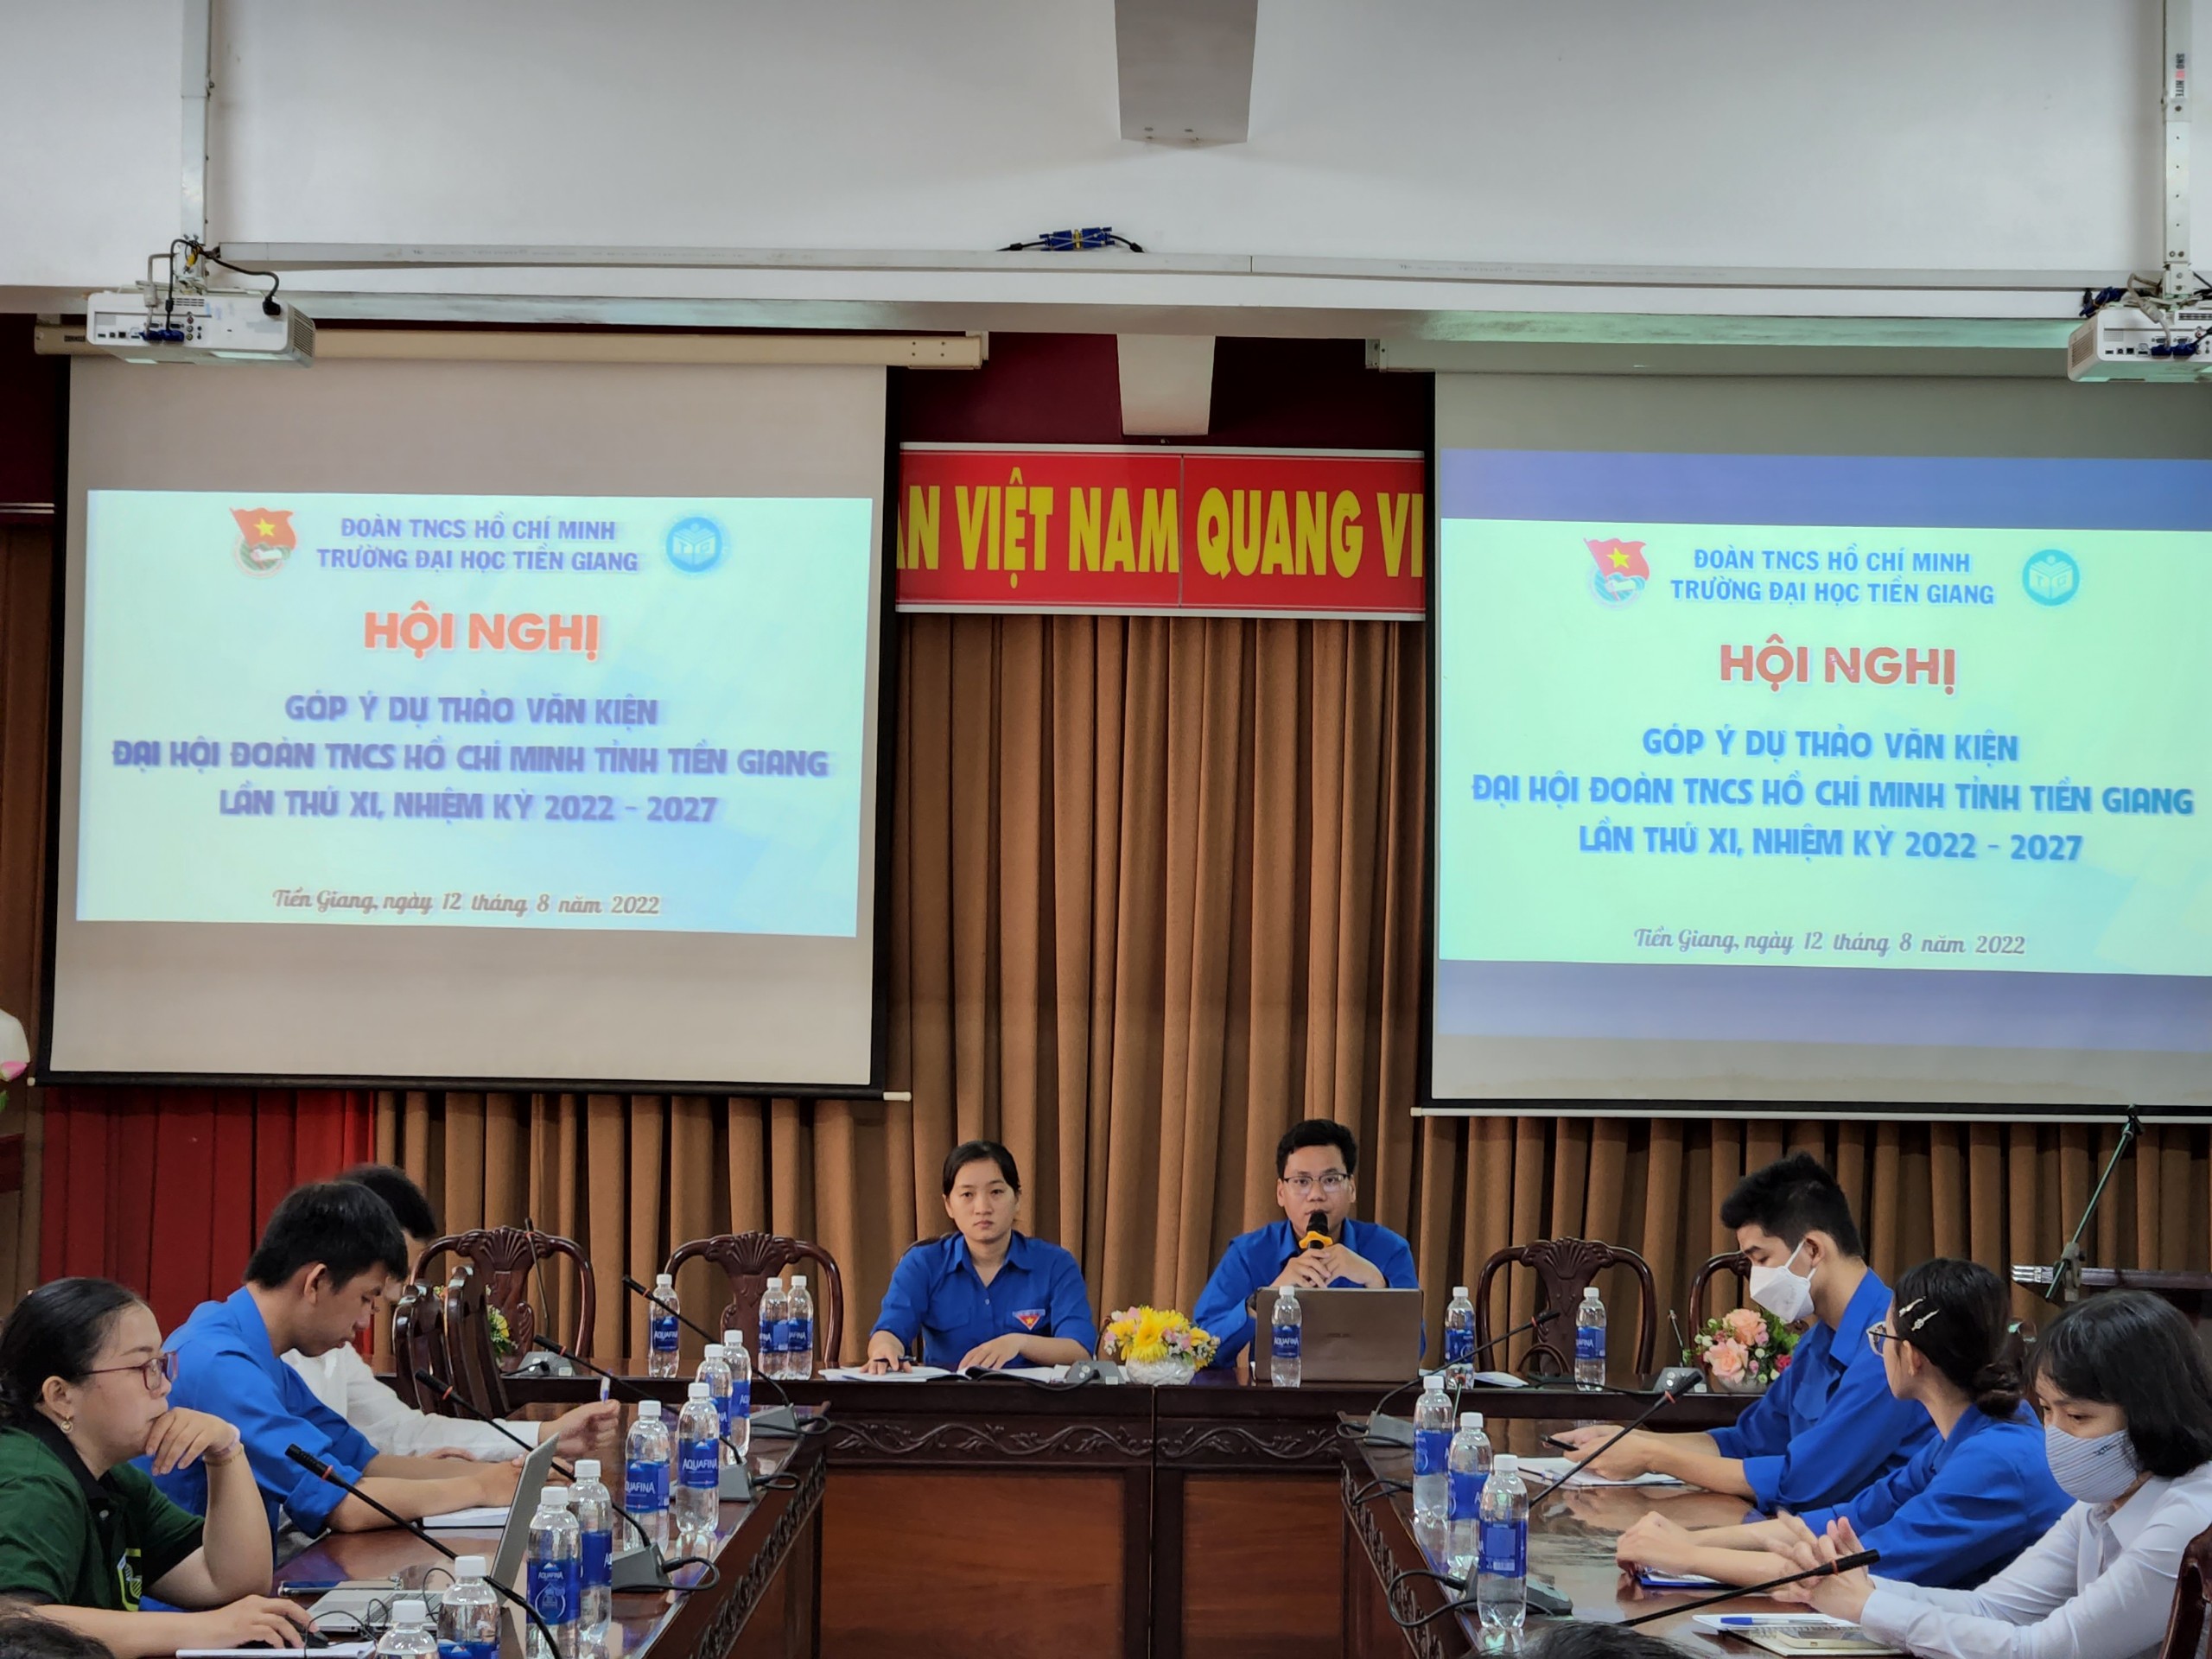 Hội nghị góp ý văn kiện Đại hội Đoàn tỉnh Tiền Giang lần thứ XI, nhiệm kỳ 2022 – 2027